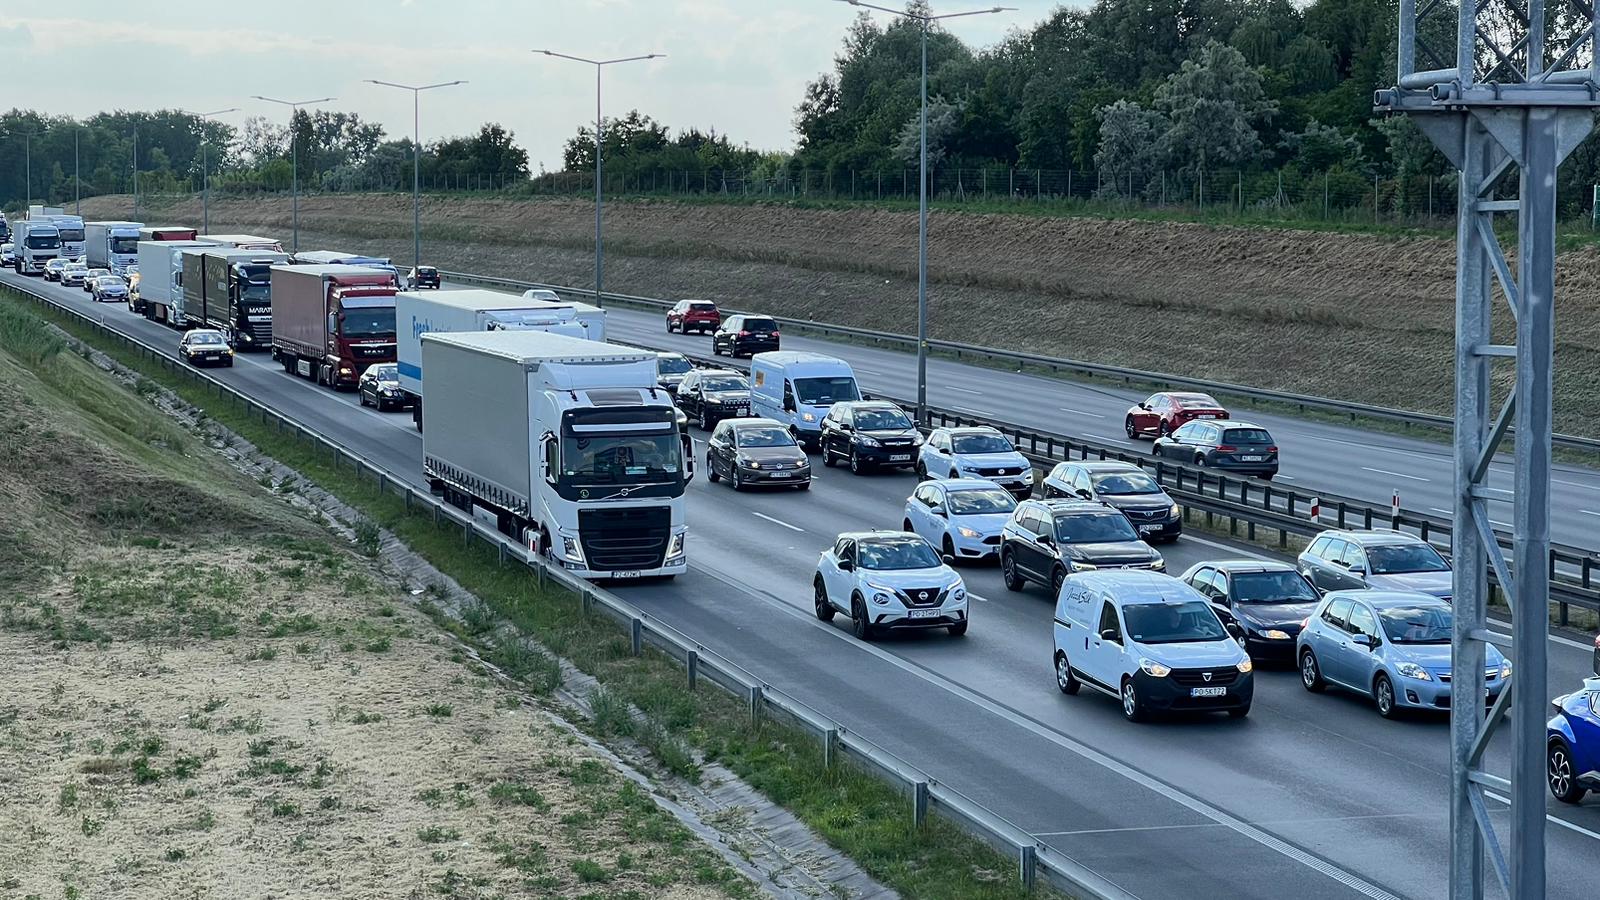 Awaria ciężarówki na poznańskim odcinku autostrady A2 – utrudnienia w ruchu